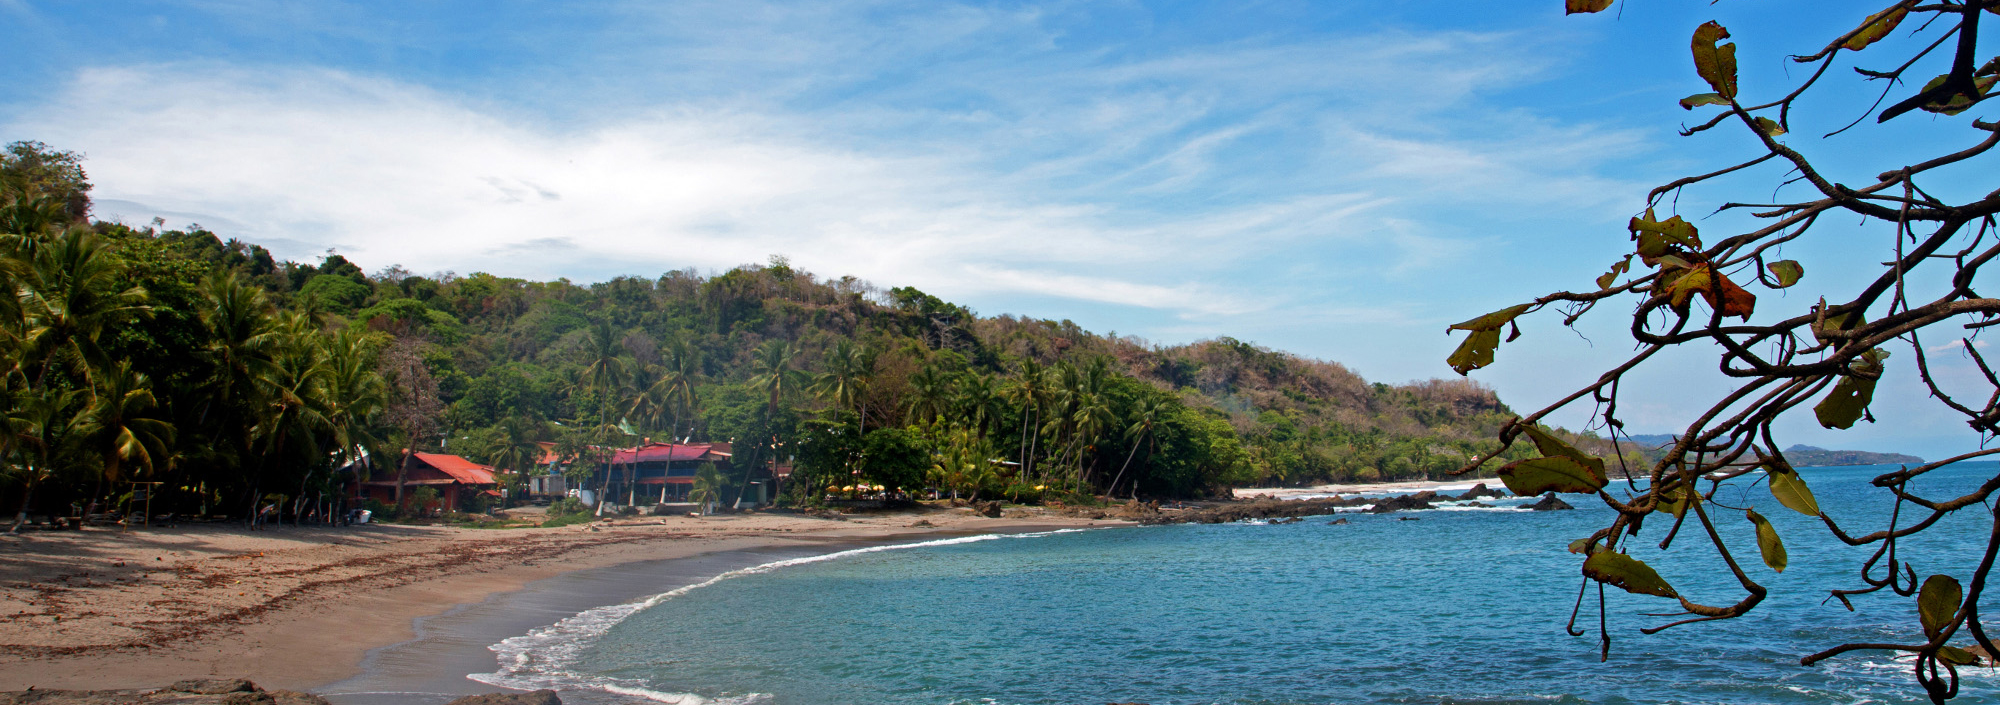 Bucht von Manzanillo auf der Halbinsel Nicoya in Costa Rica